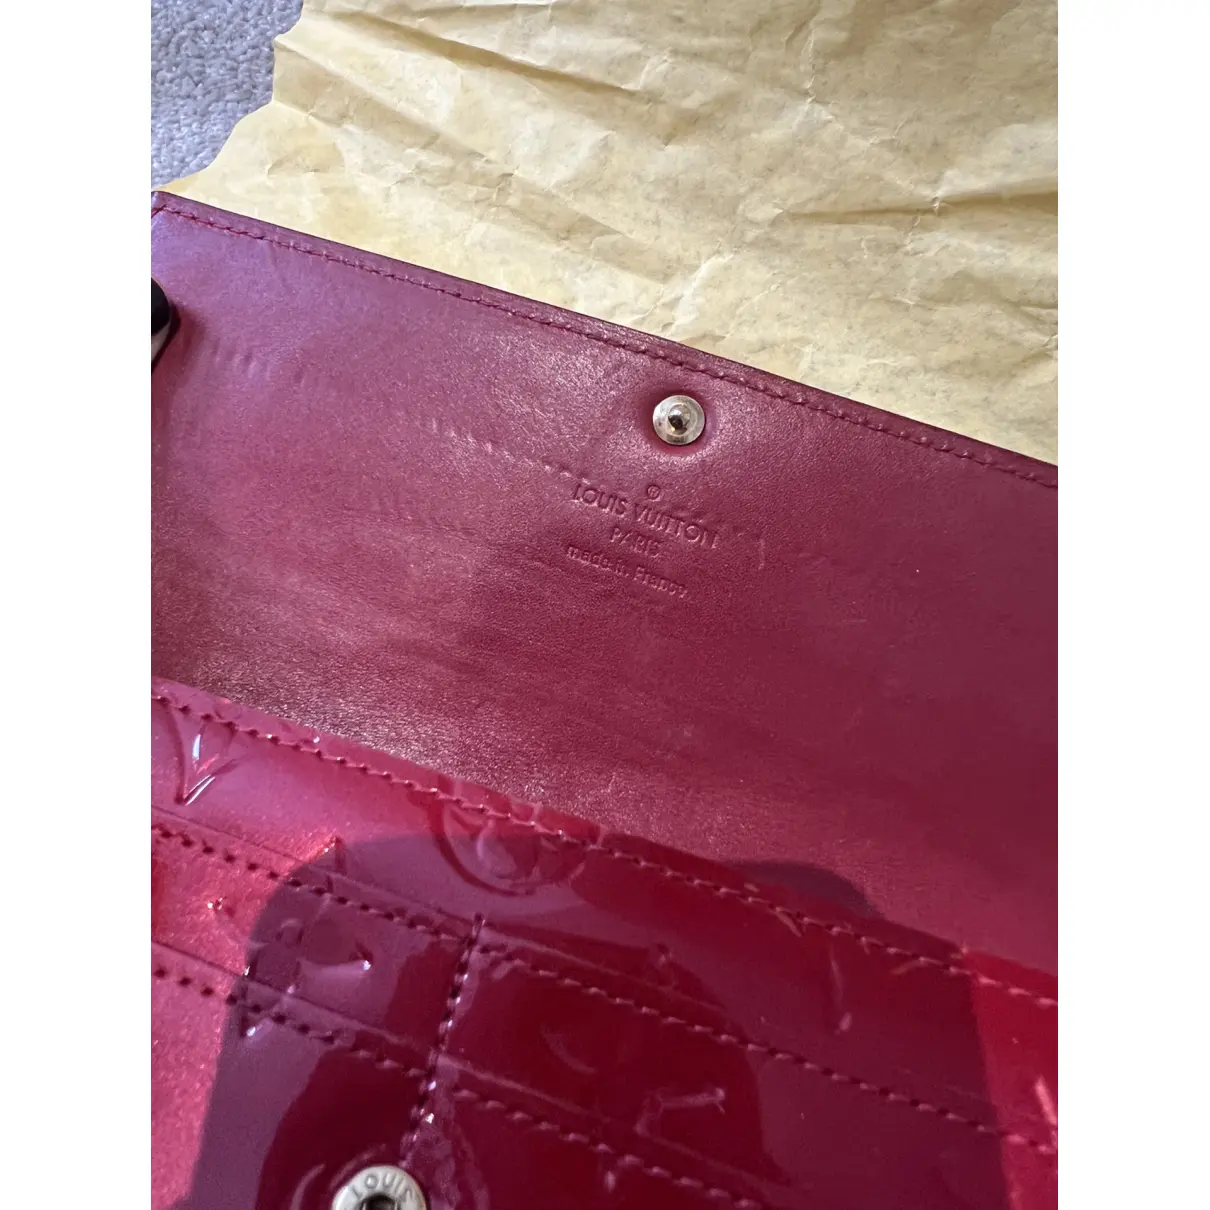 Buy Louis Vuitton Sarah patent leather wallet online